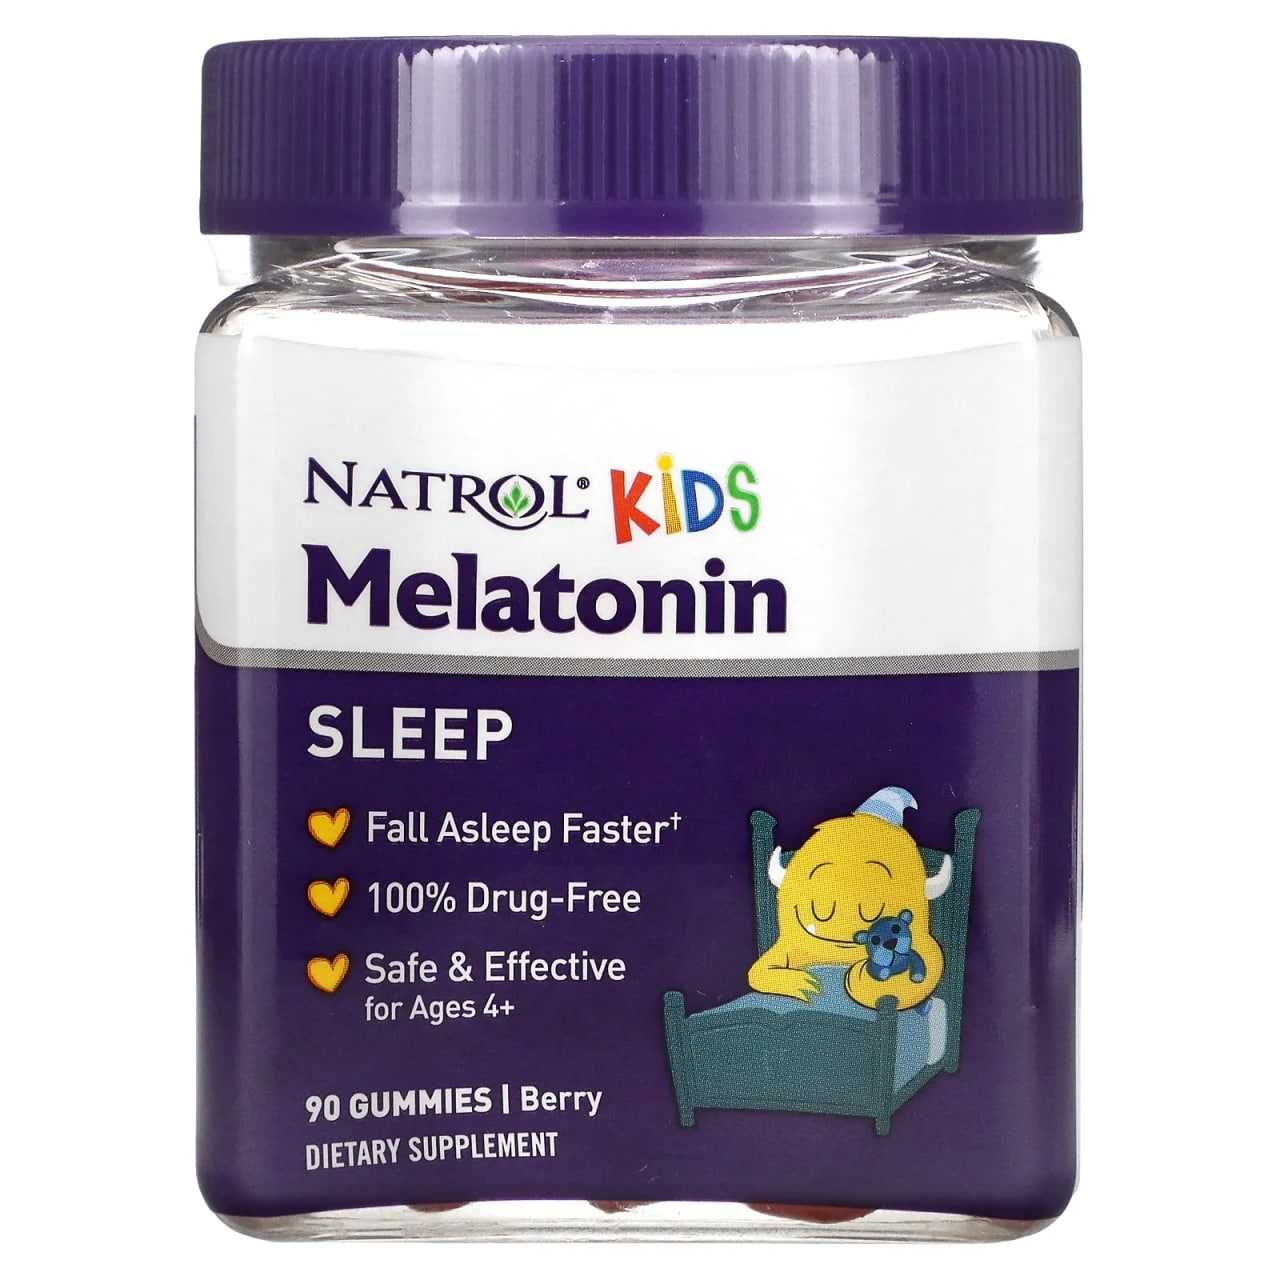 мелатонин, для детей, melatonin bollarga, мелотонин, melotonin